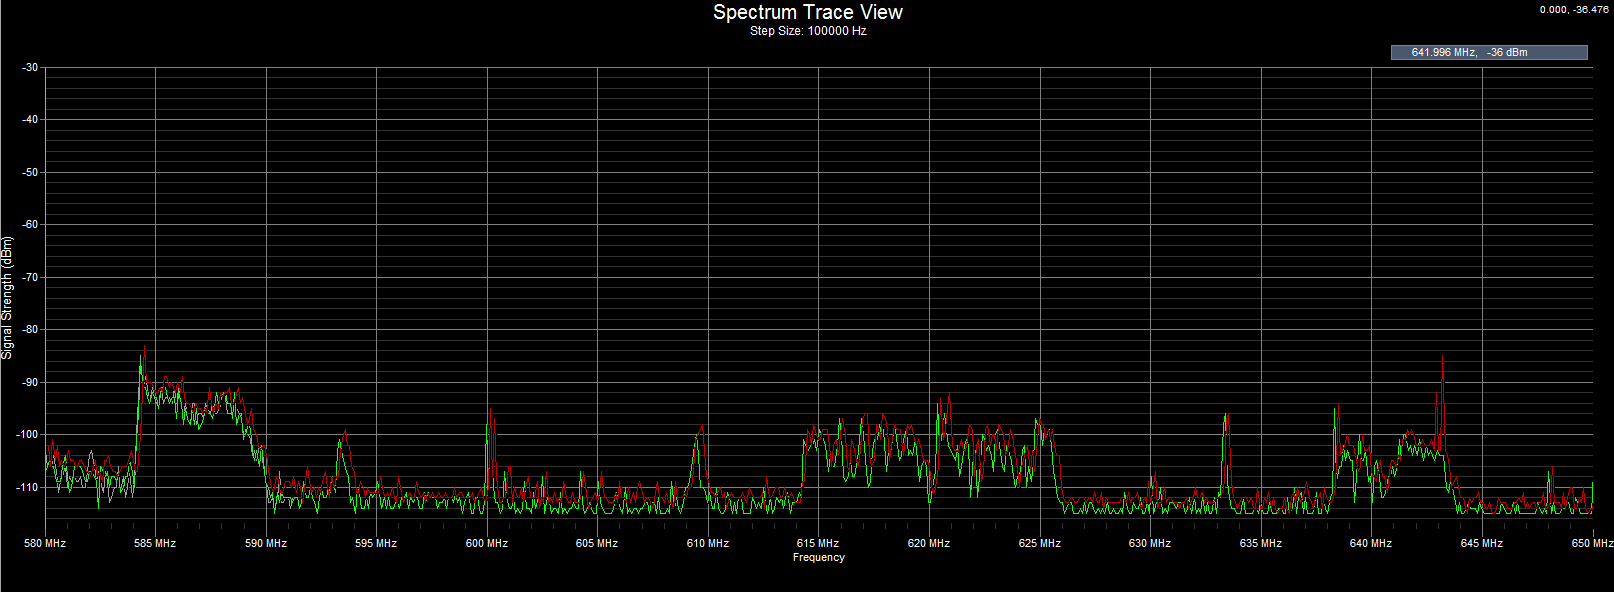 Spectrum Trace UHF Band